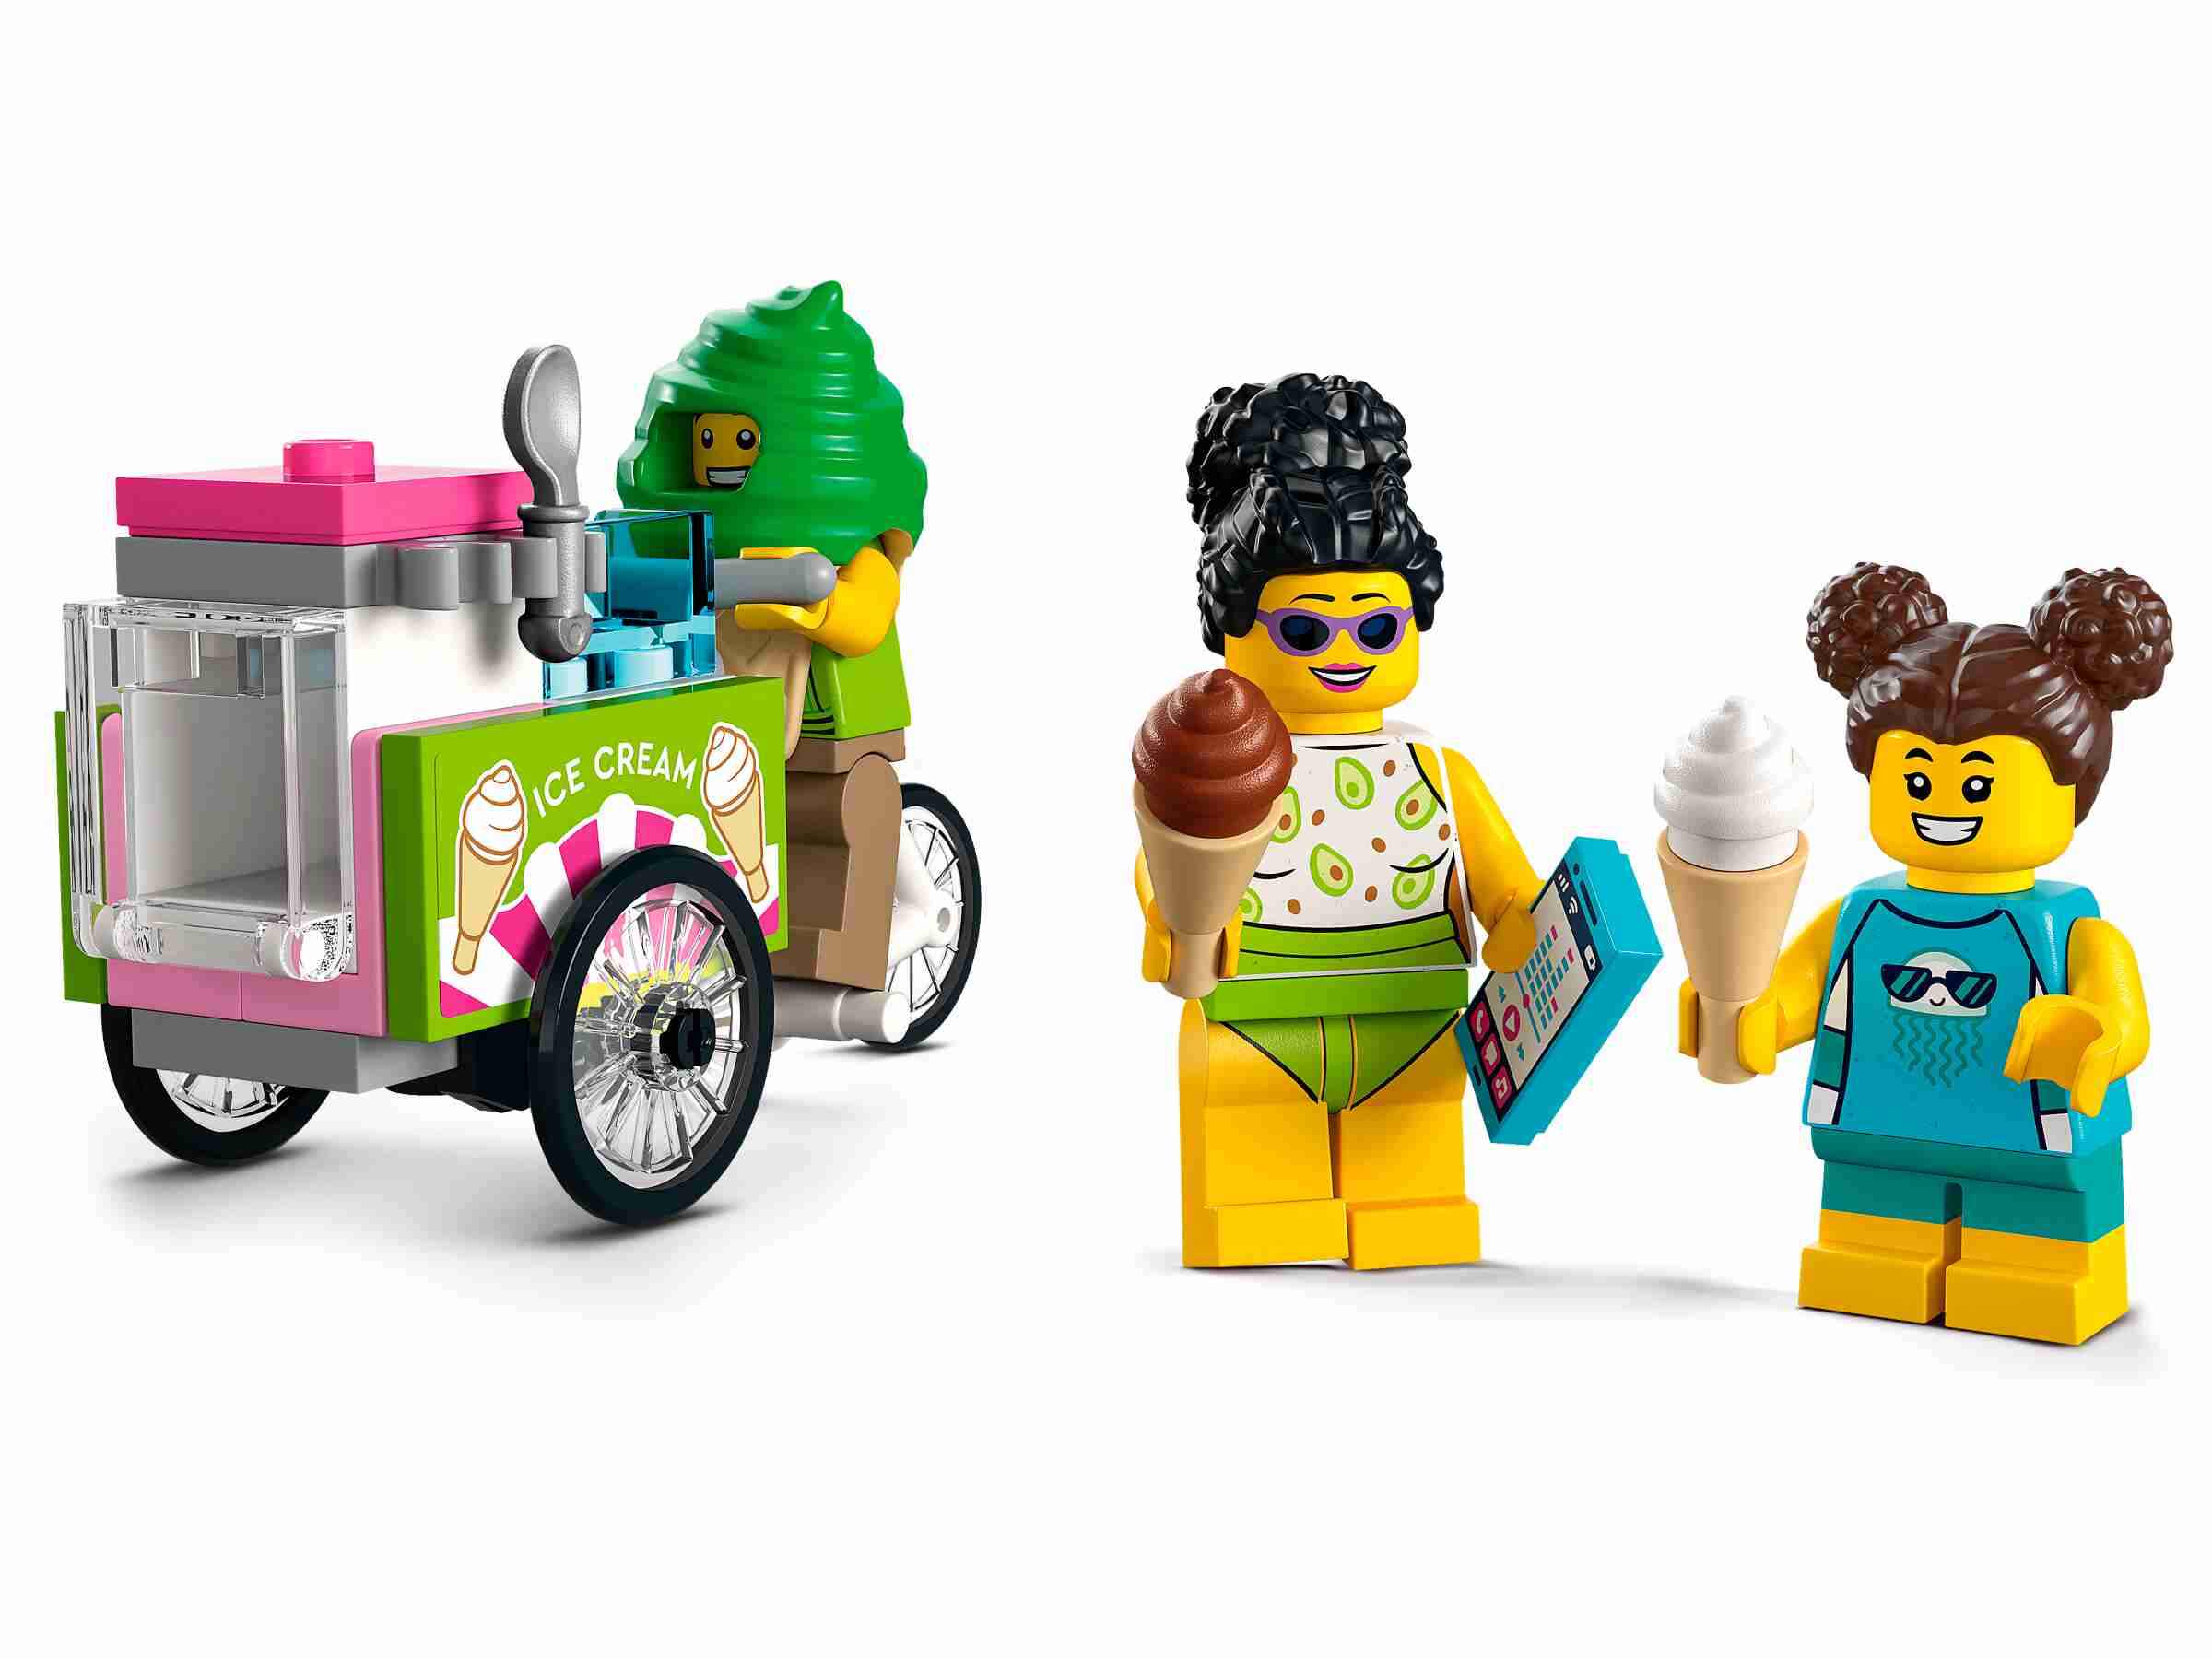 LEGO 60328 City Rettungsschwimmer-Station, mit Geländewagen, Straßenplatten